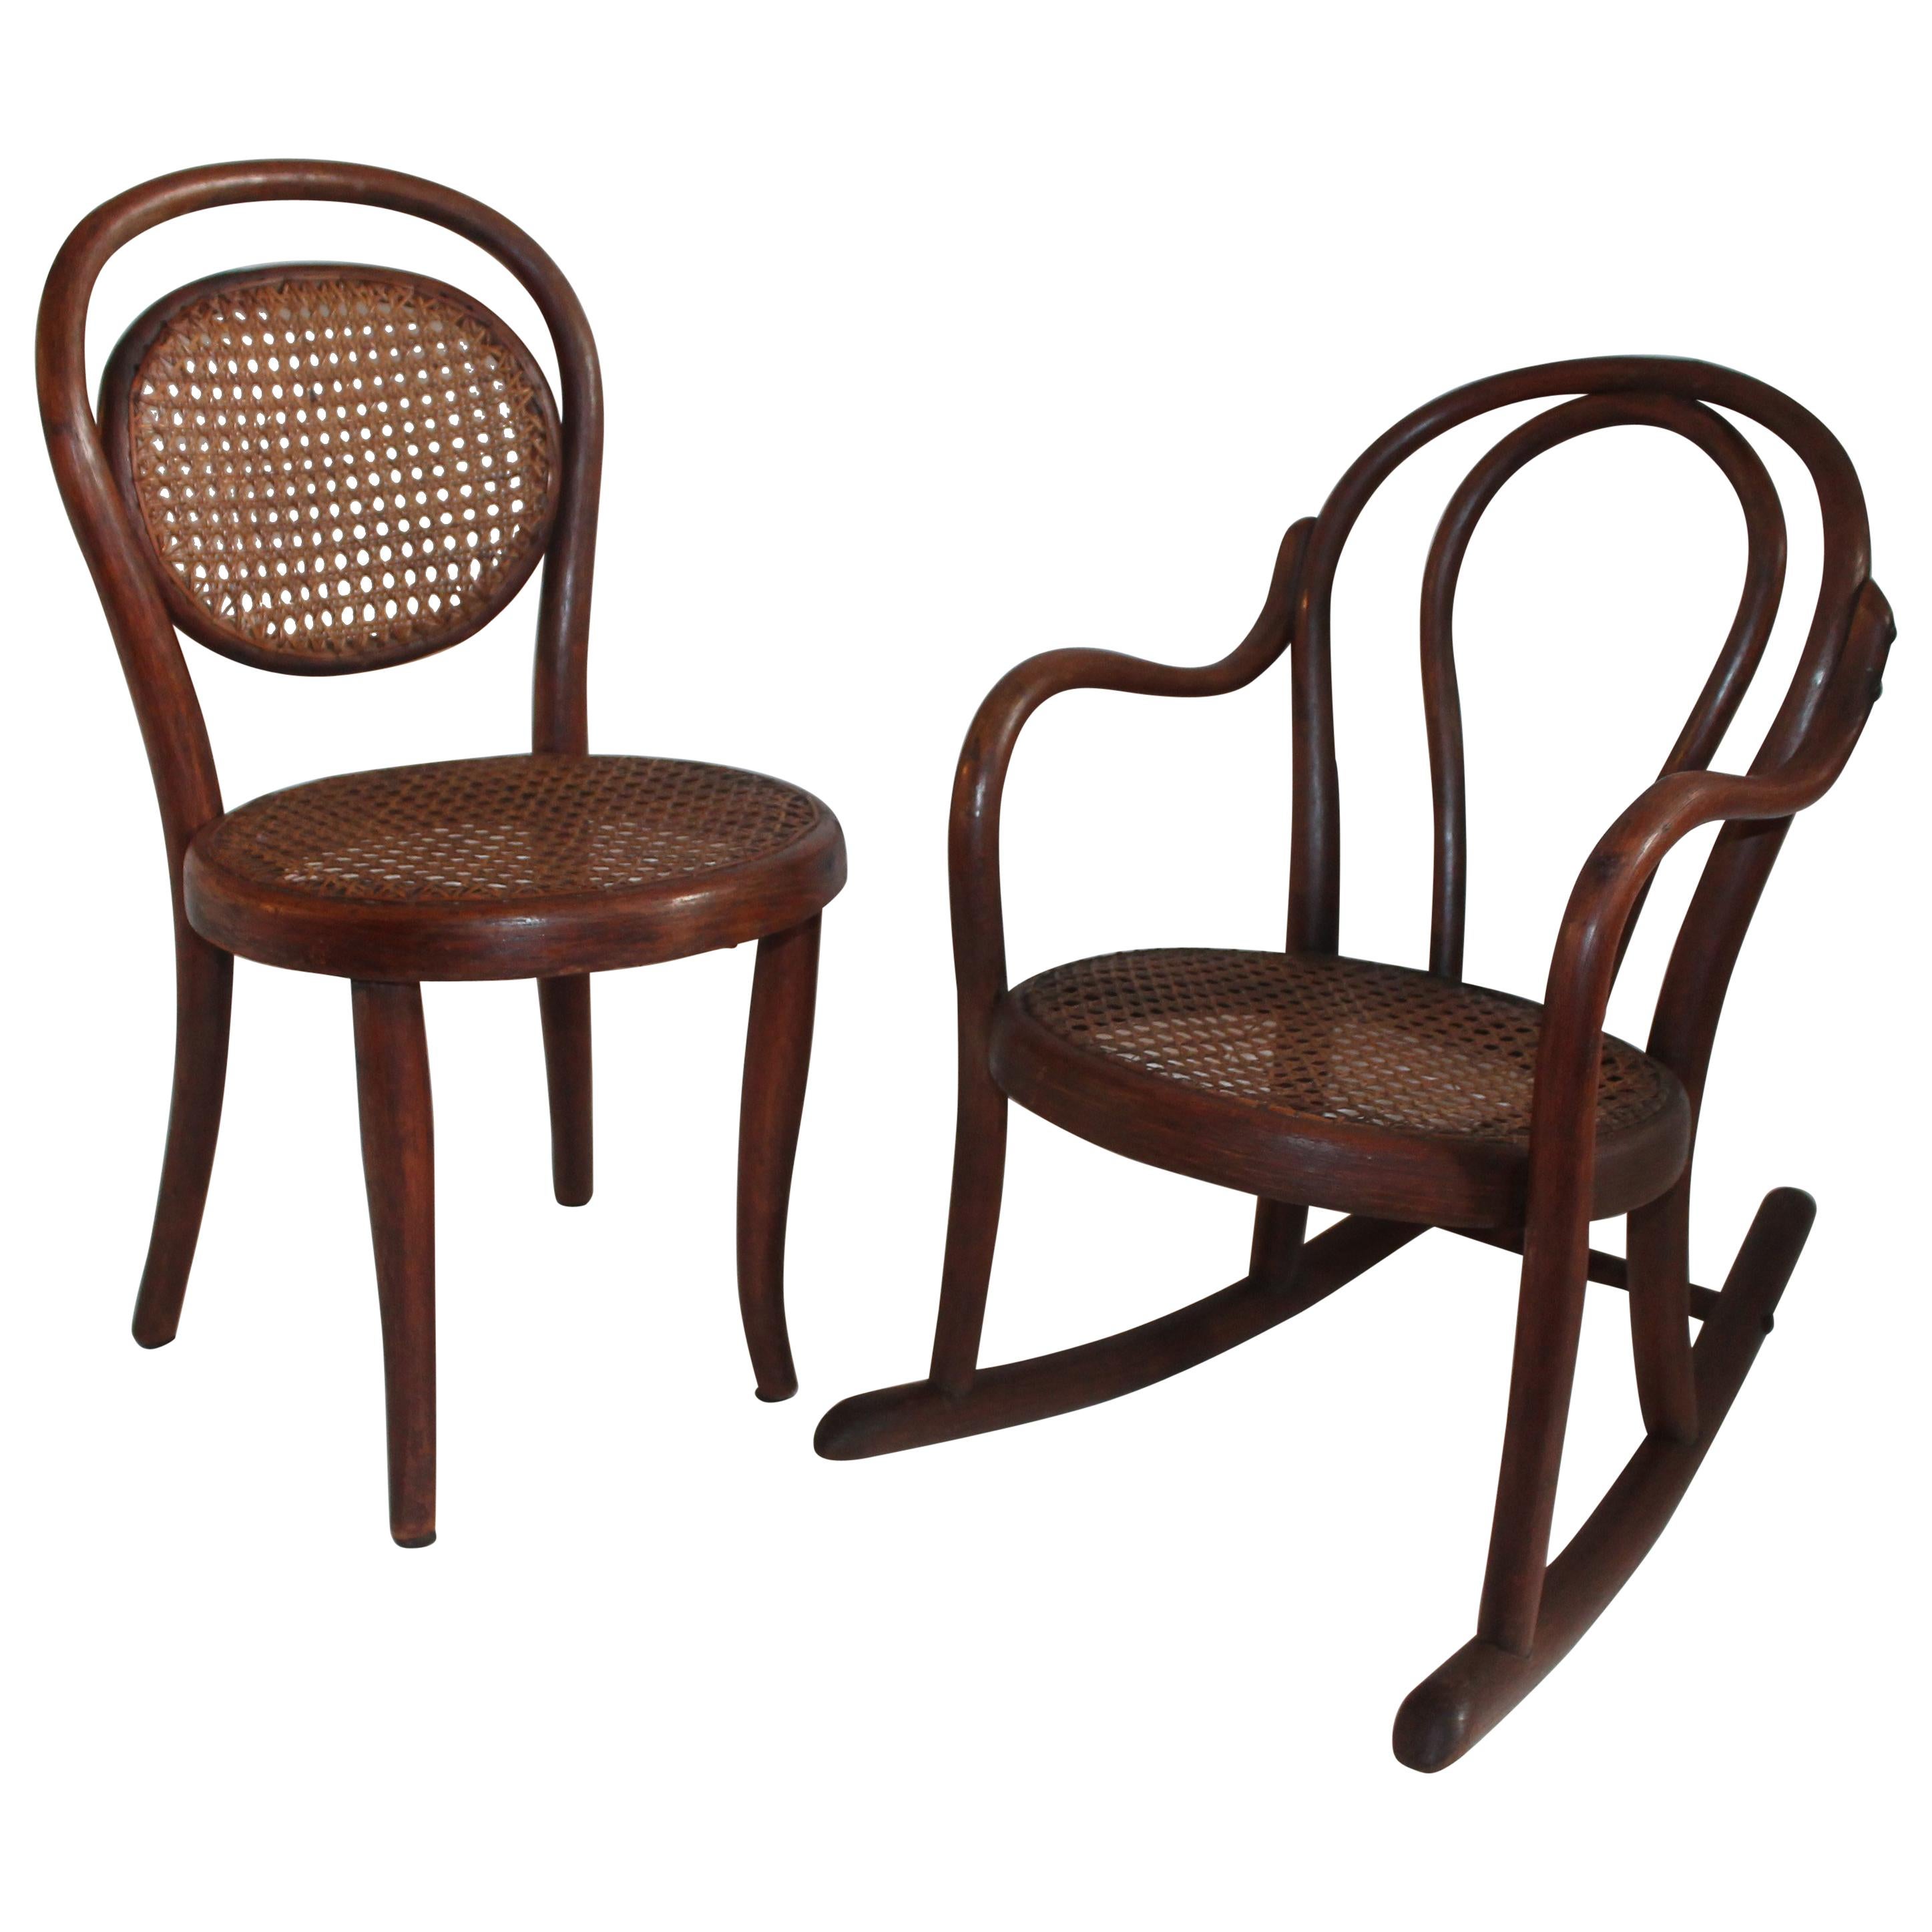 Rocker und Stuhl aus Bugholz mit Rohrstühlen, 19. Jahrhundert